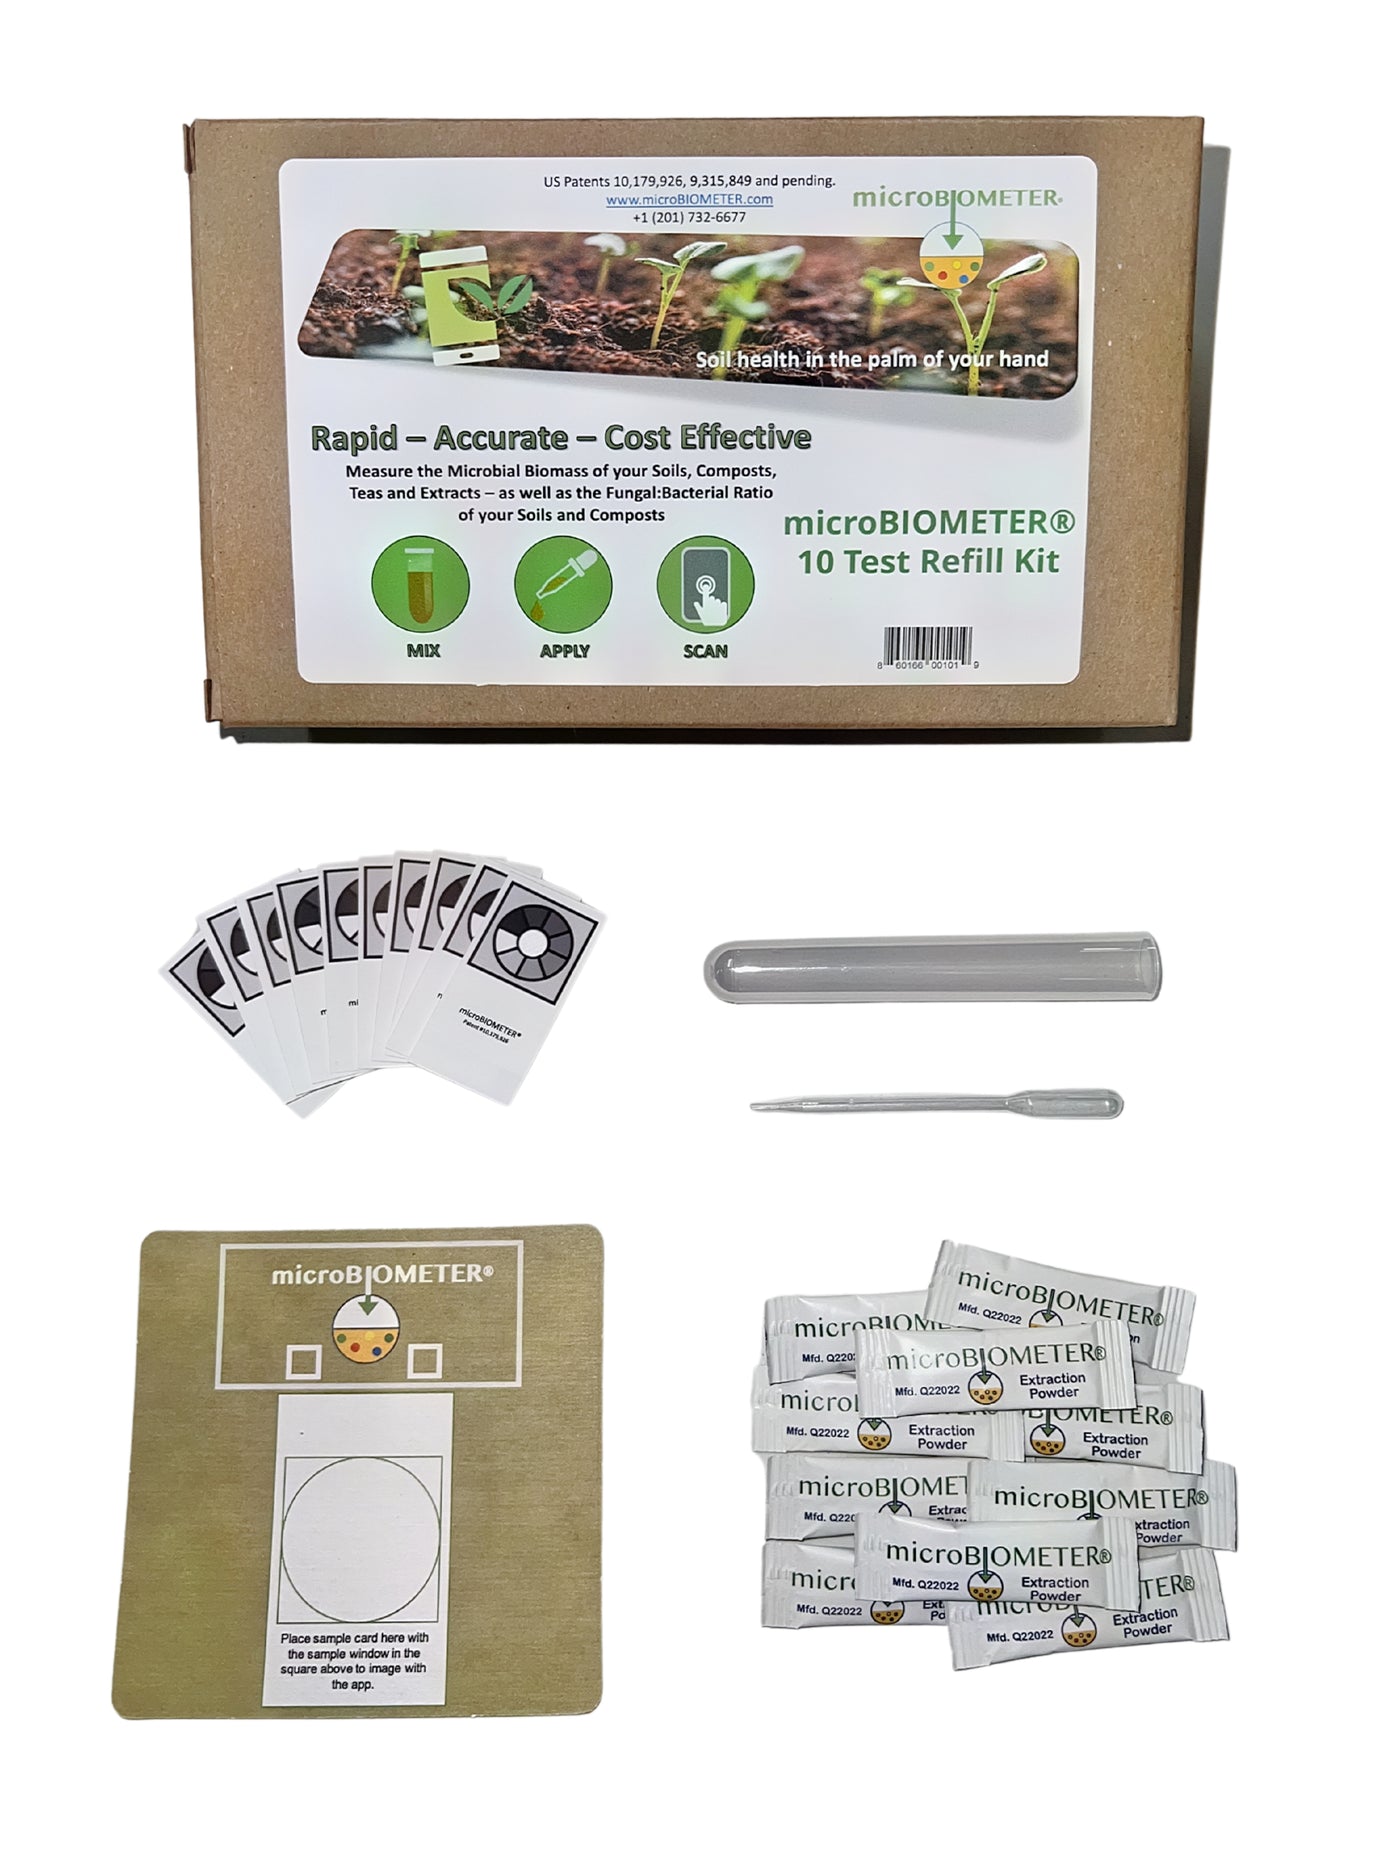 Ten Test Refill Kit For MicroBIOMETER Soil Biomass Test Kit